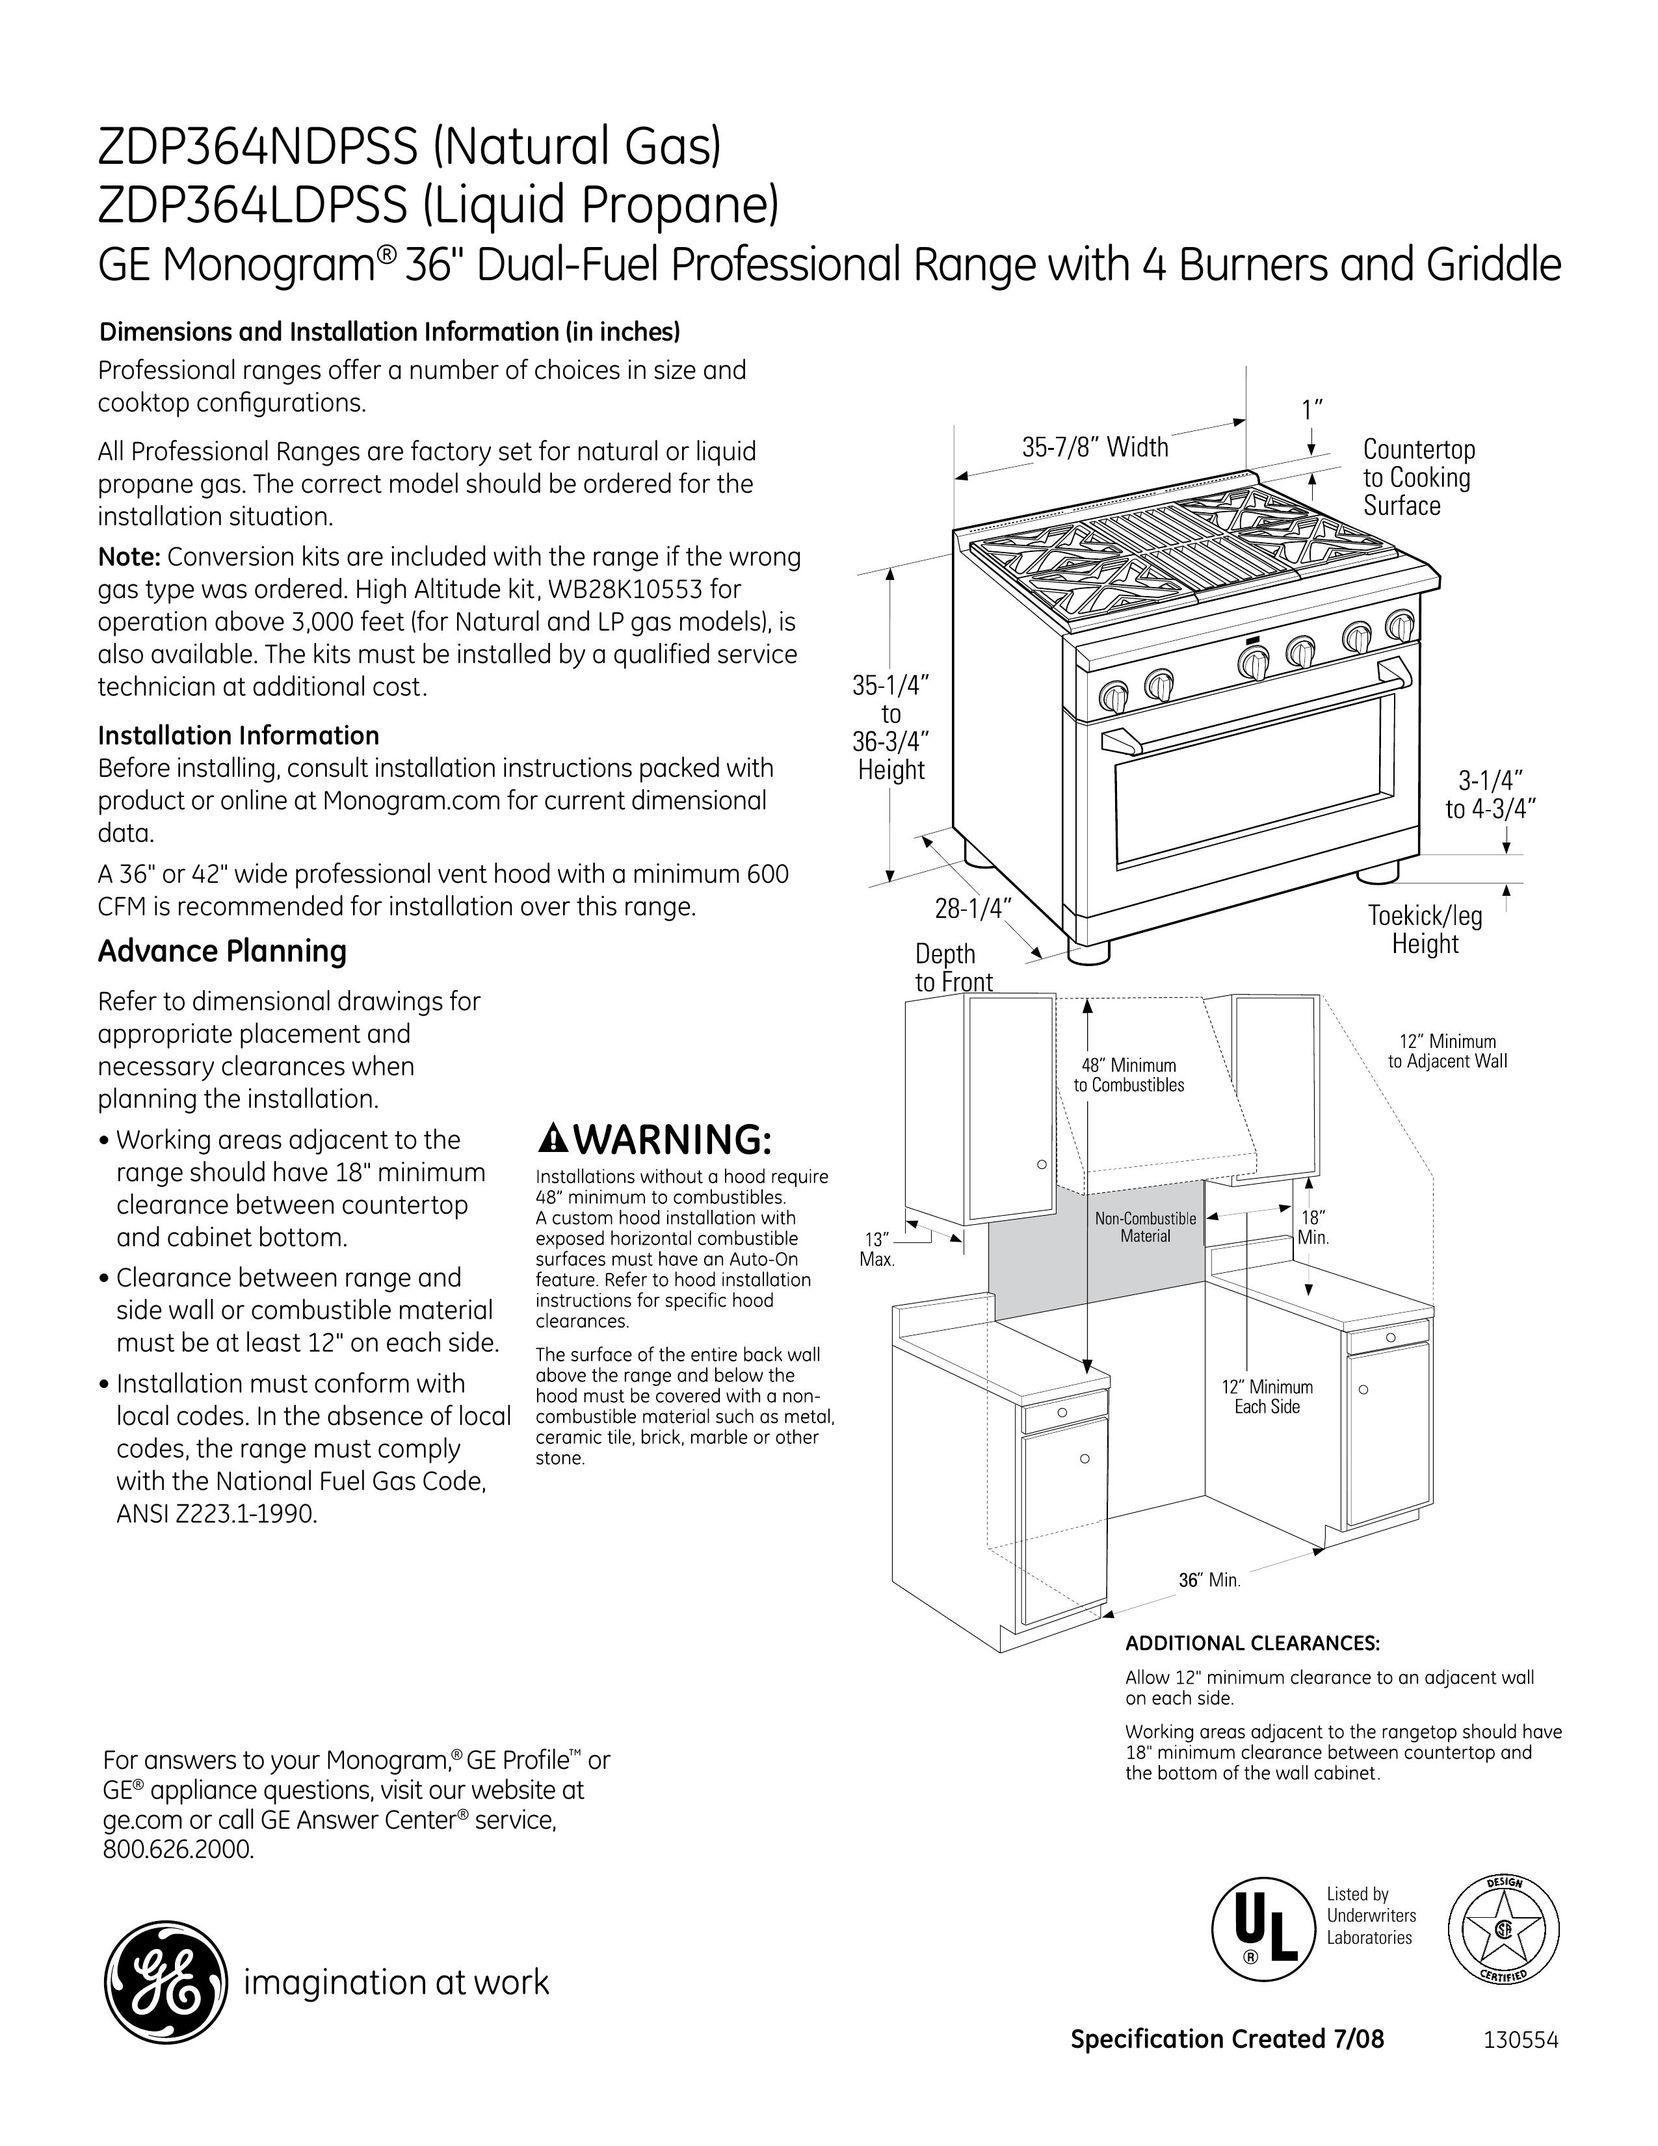 GE Monogram ZDP364LDPSS Range User Manual